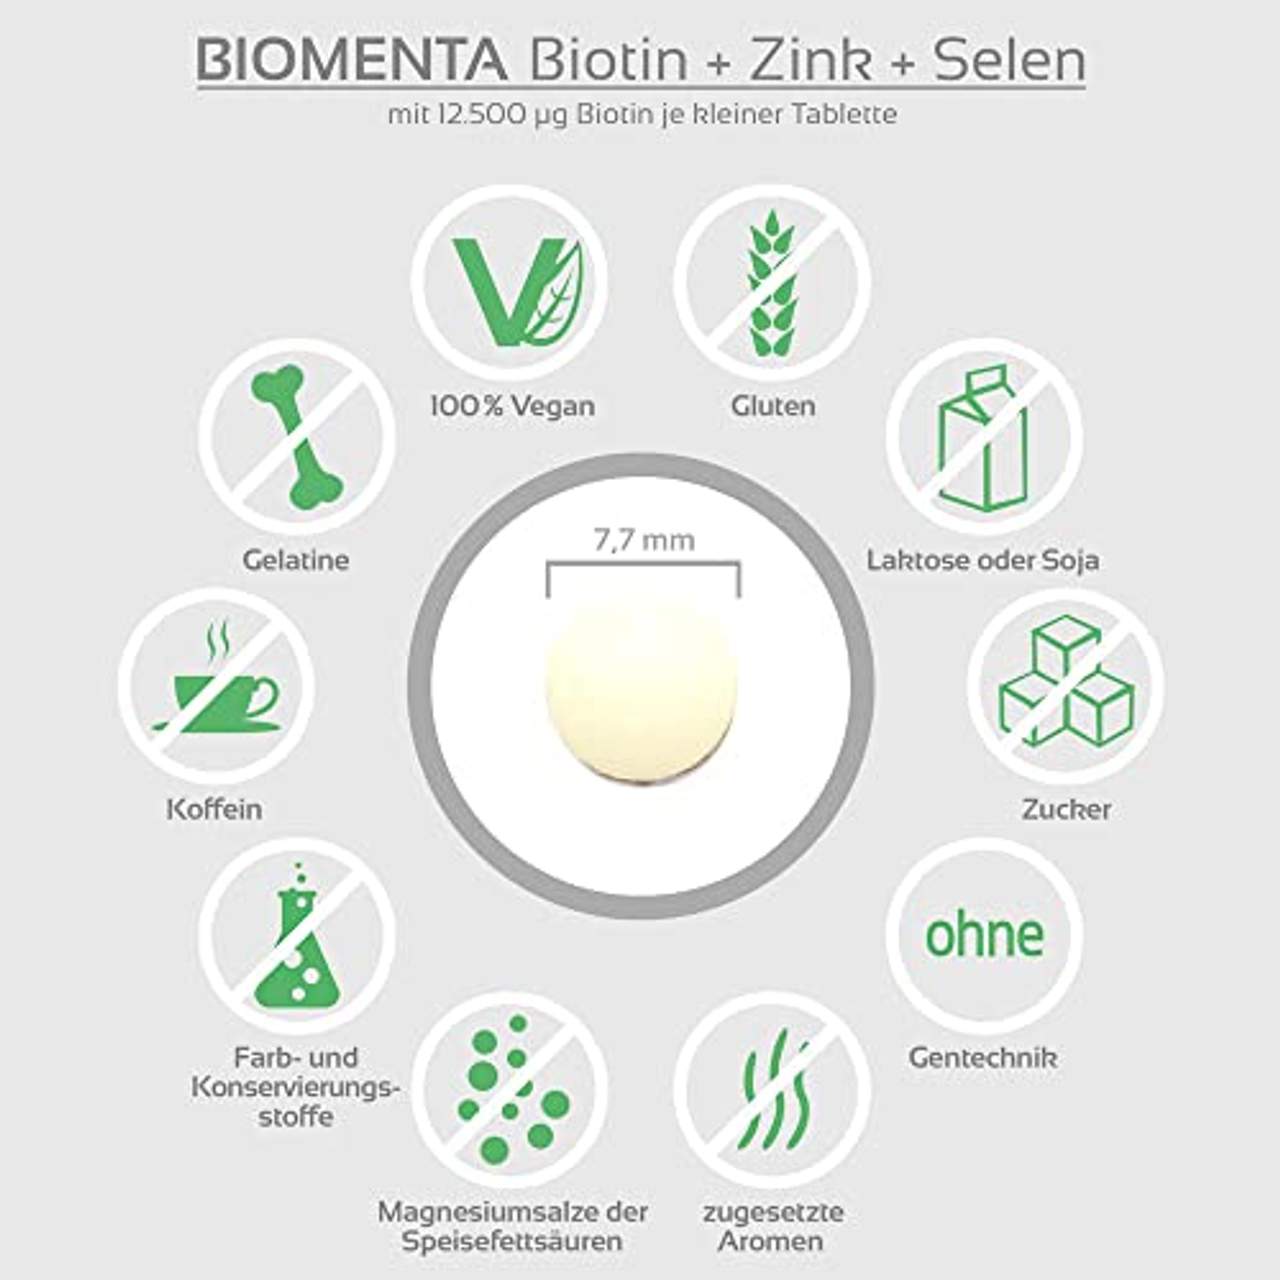 BIOMENTA Biotin hochdosiert mit 12.500 mcg